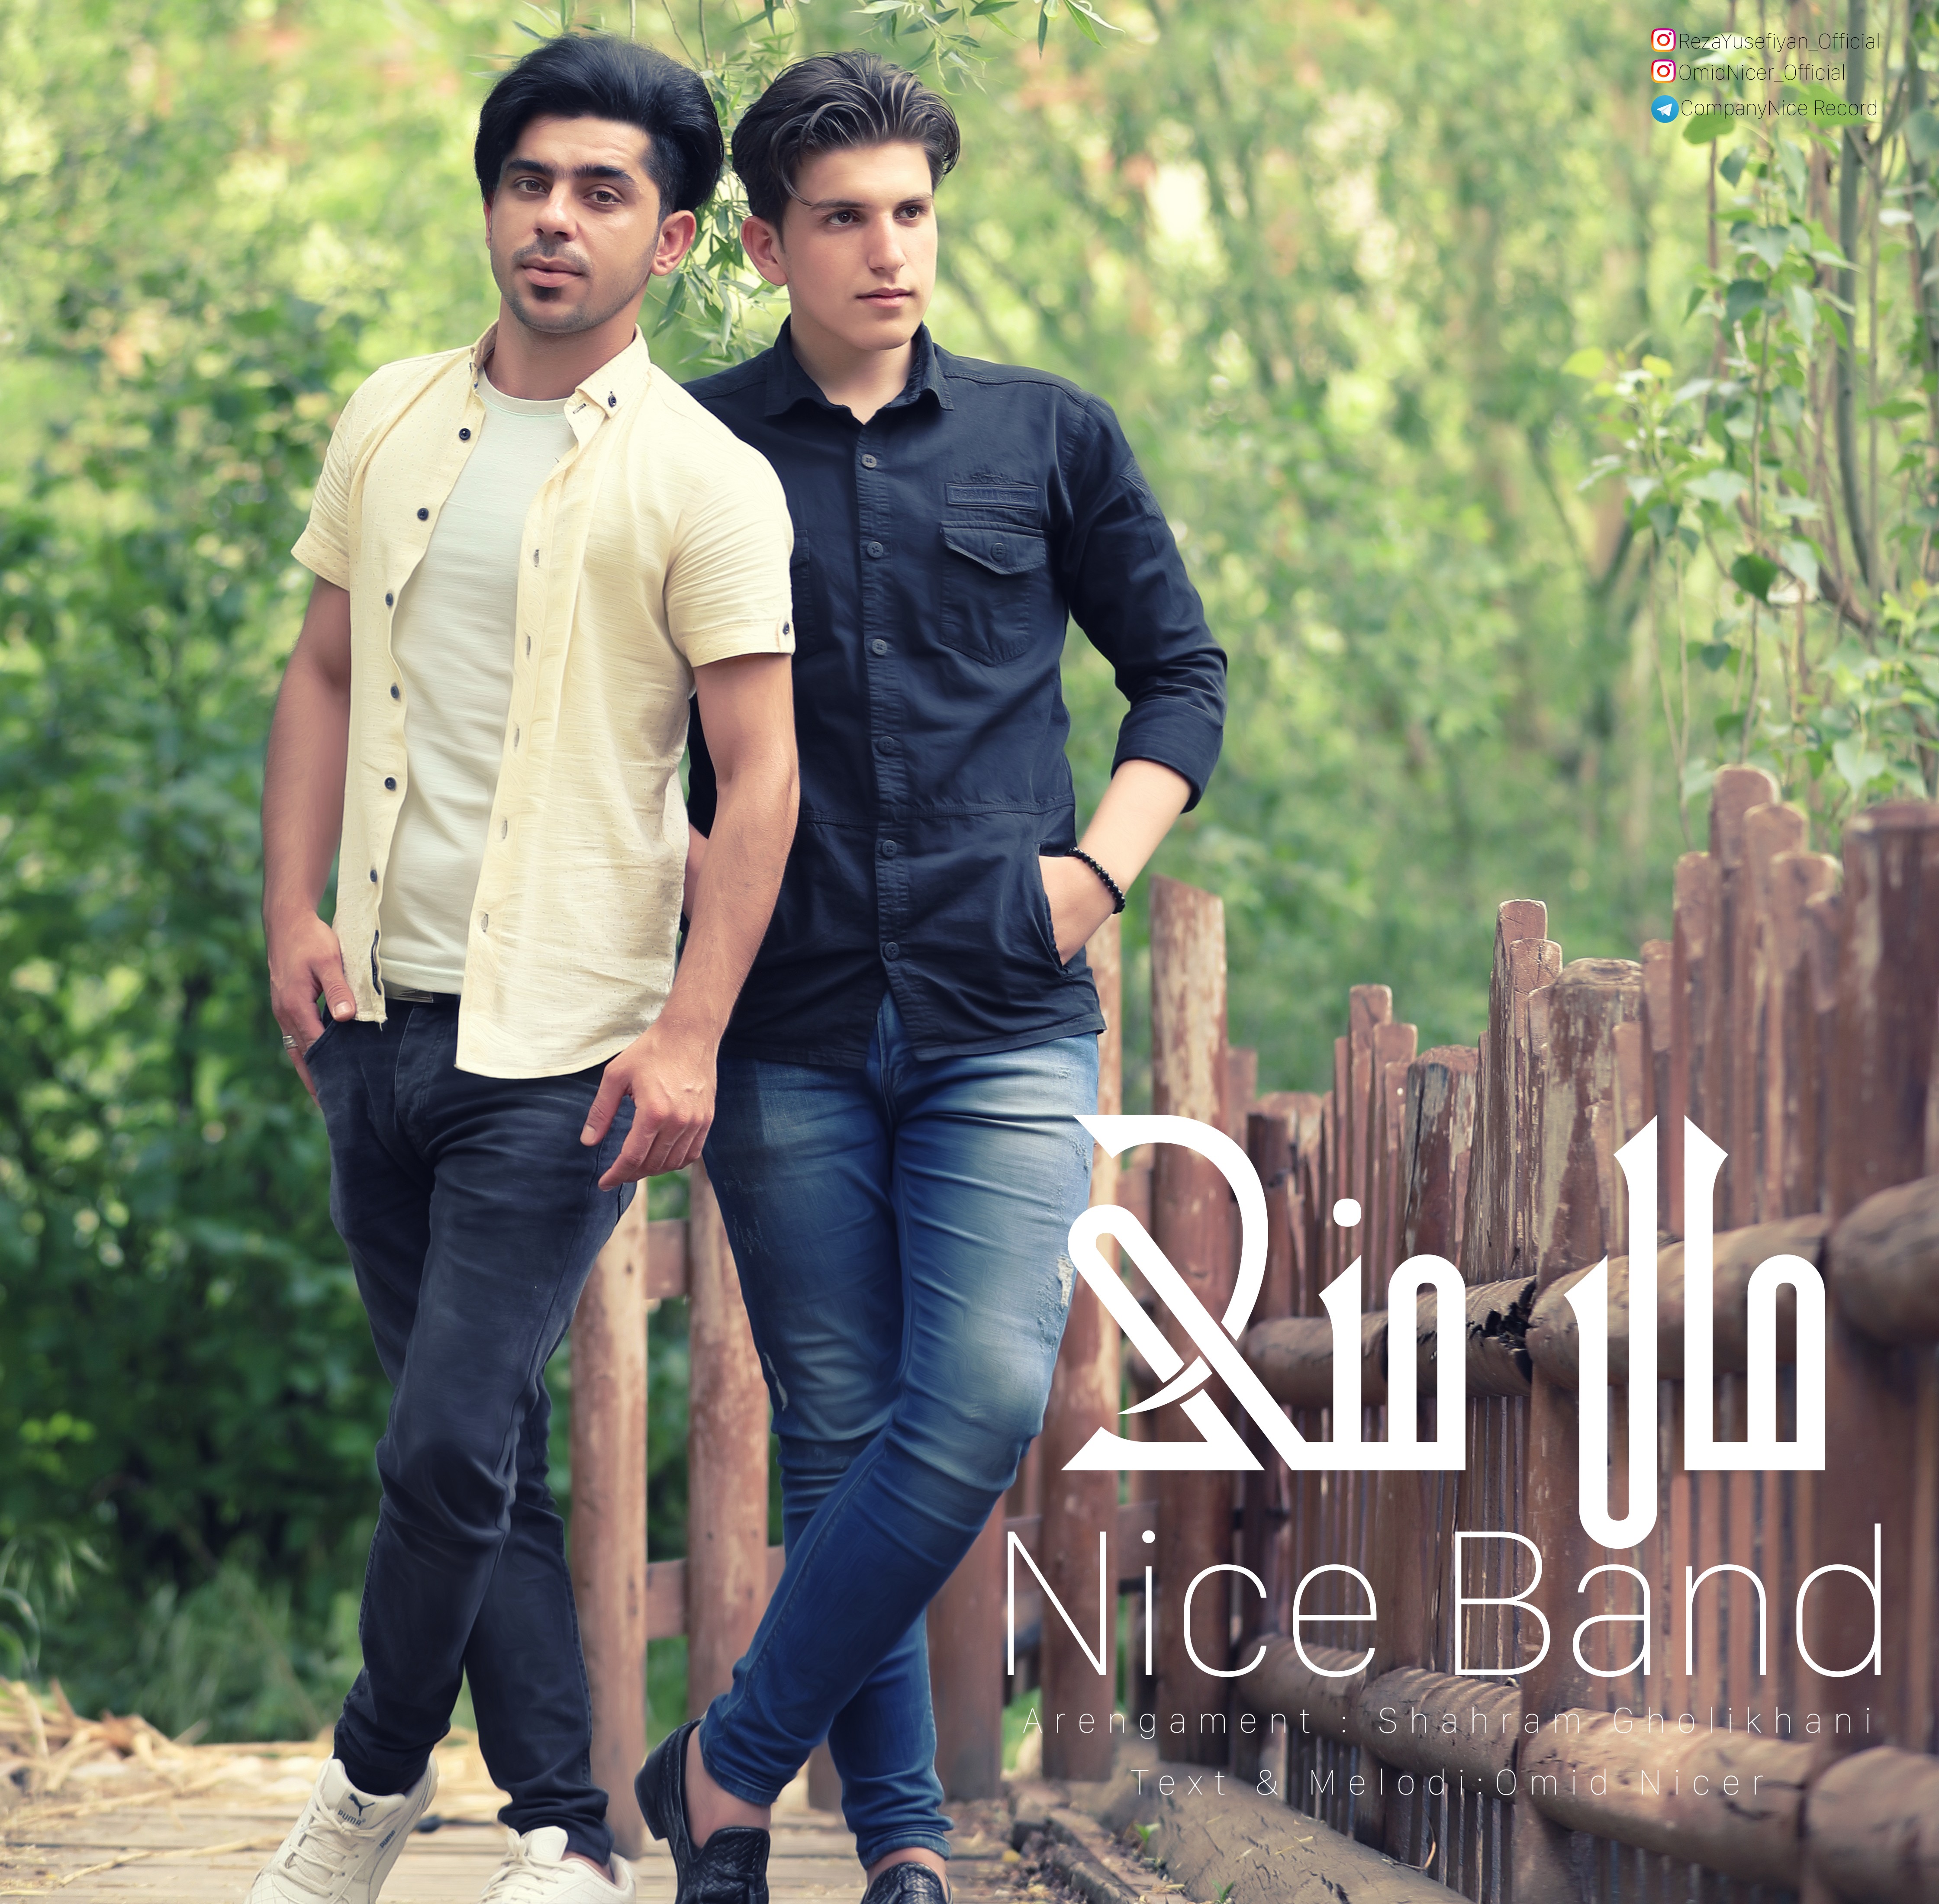  دانلود آهنگ جدید نایس بند - مال منی | Download New Music By Nice Band - Male Mani